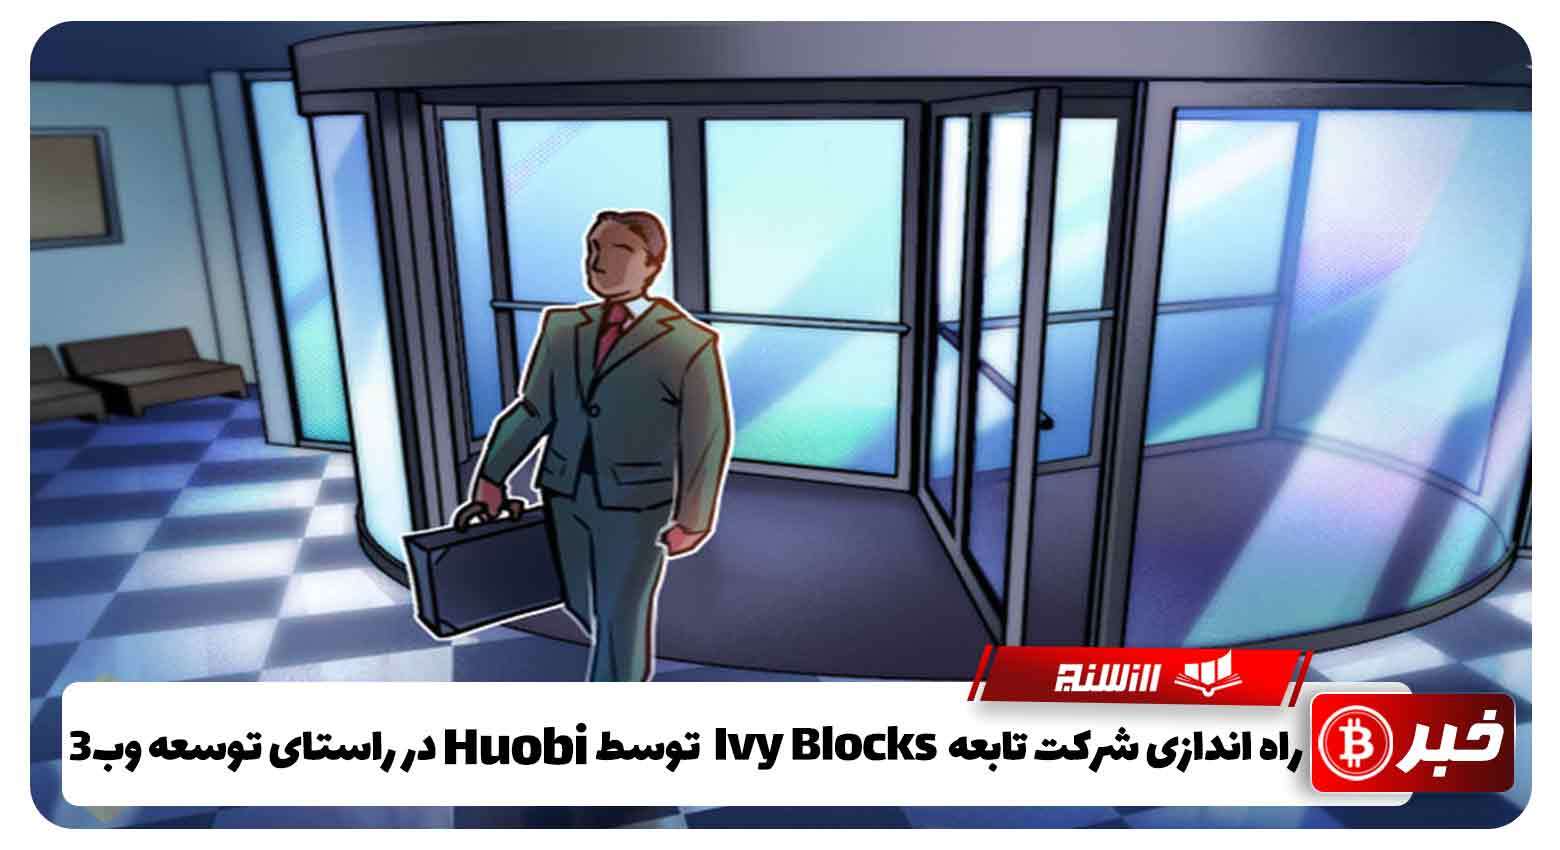 راه اندازی شرکت تابعه Ivy Blocks توسط Huobi در راستای توسعه وب3